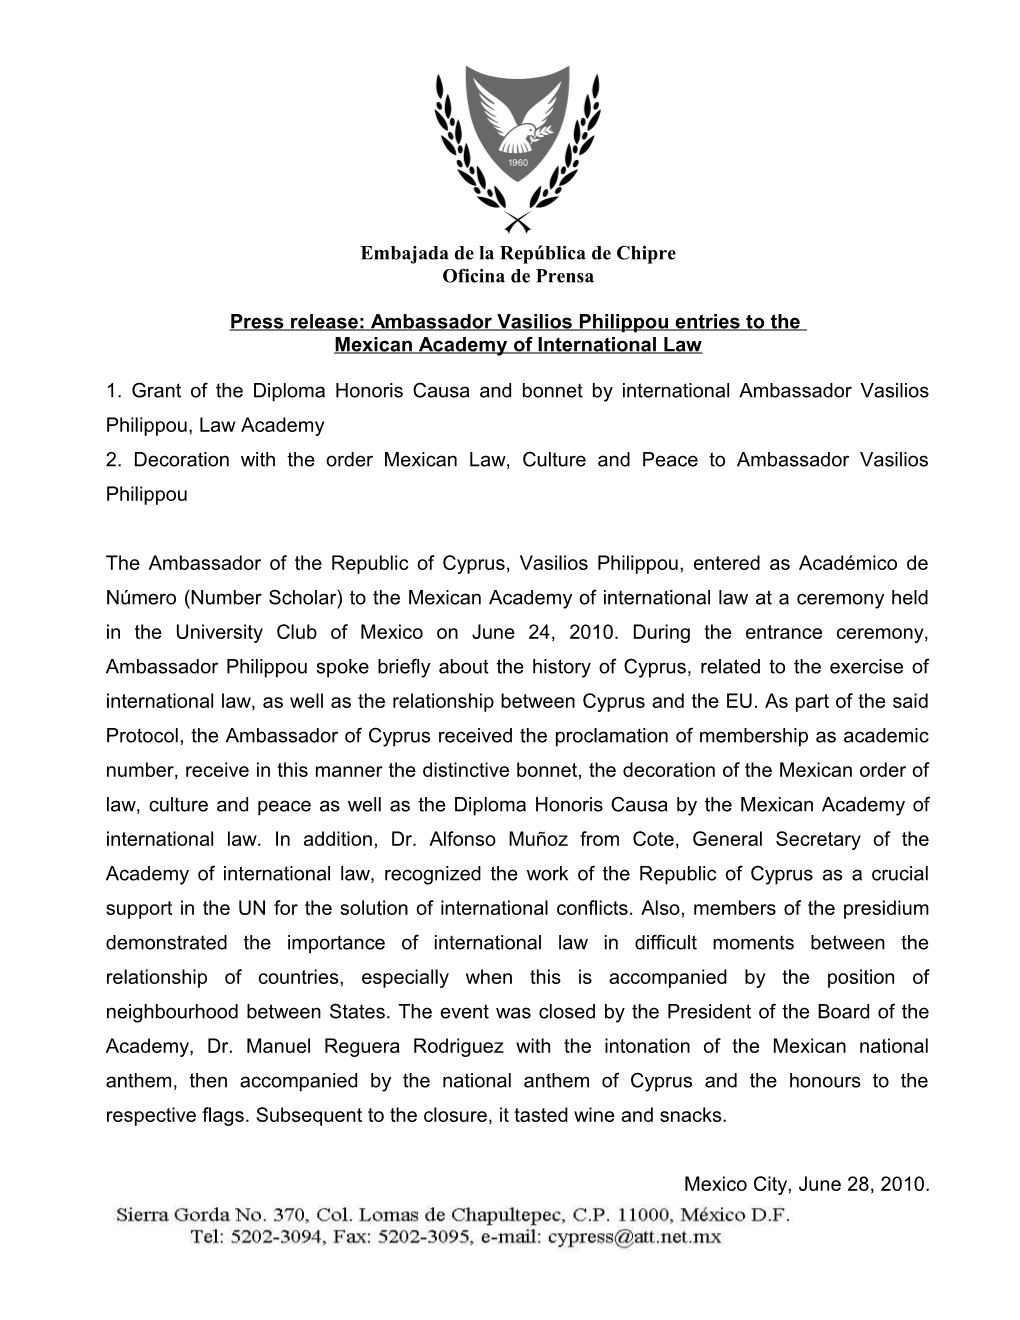 Press Release: Ambassador Vasilios Philippou Entries to The